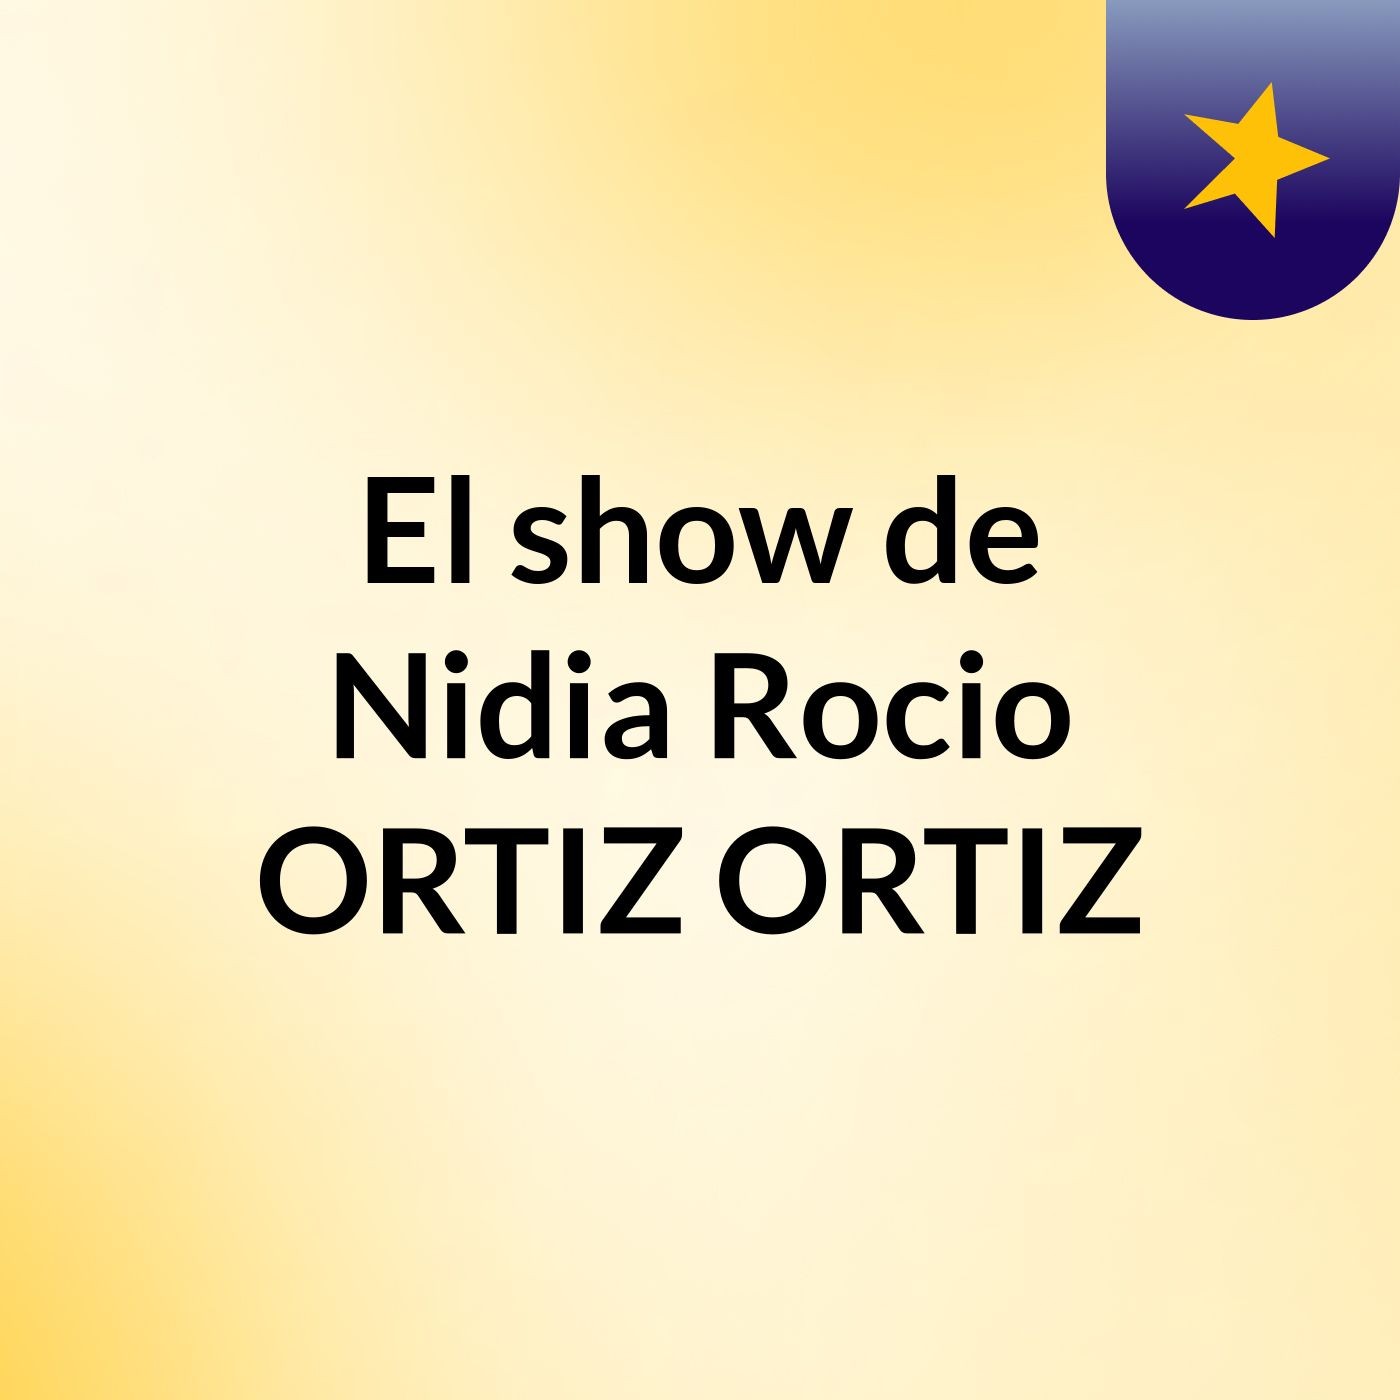 El show de Nidia Rocio ORTIZ ORTIZ